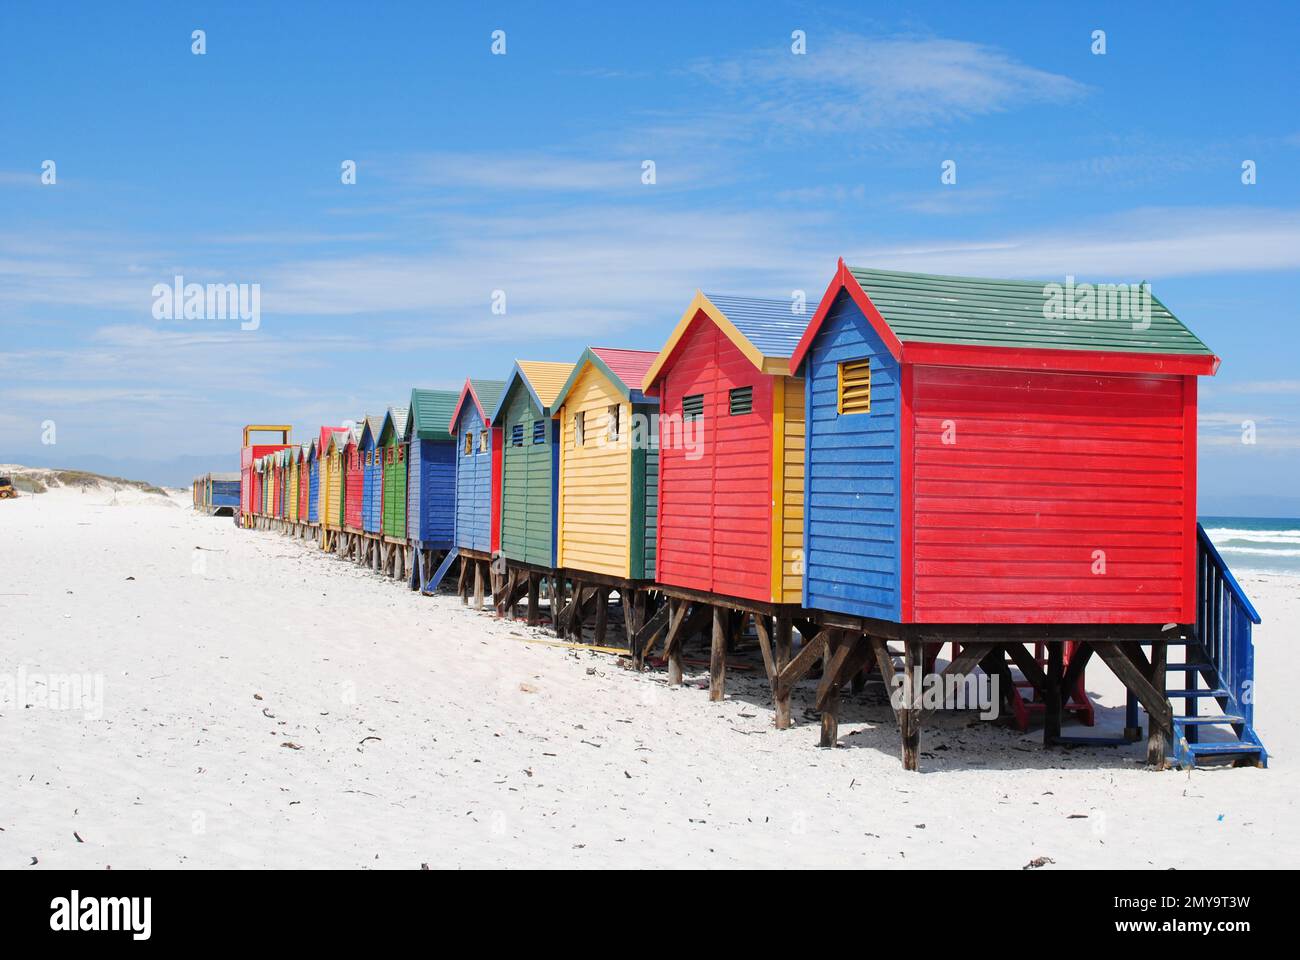 Farbenfrohe Häuser in Miuzenberg, Kapstadt, Südafrika Stockfoto